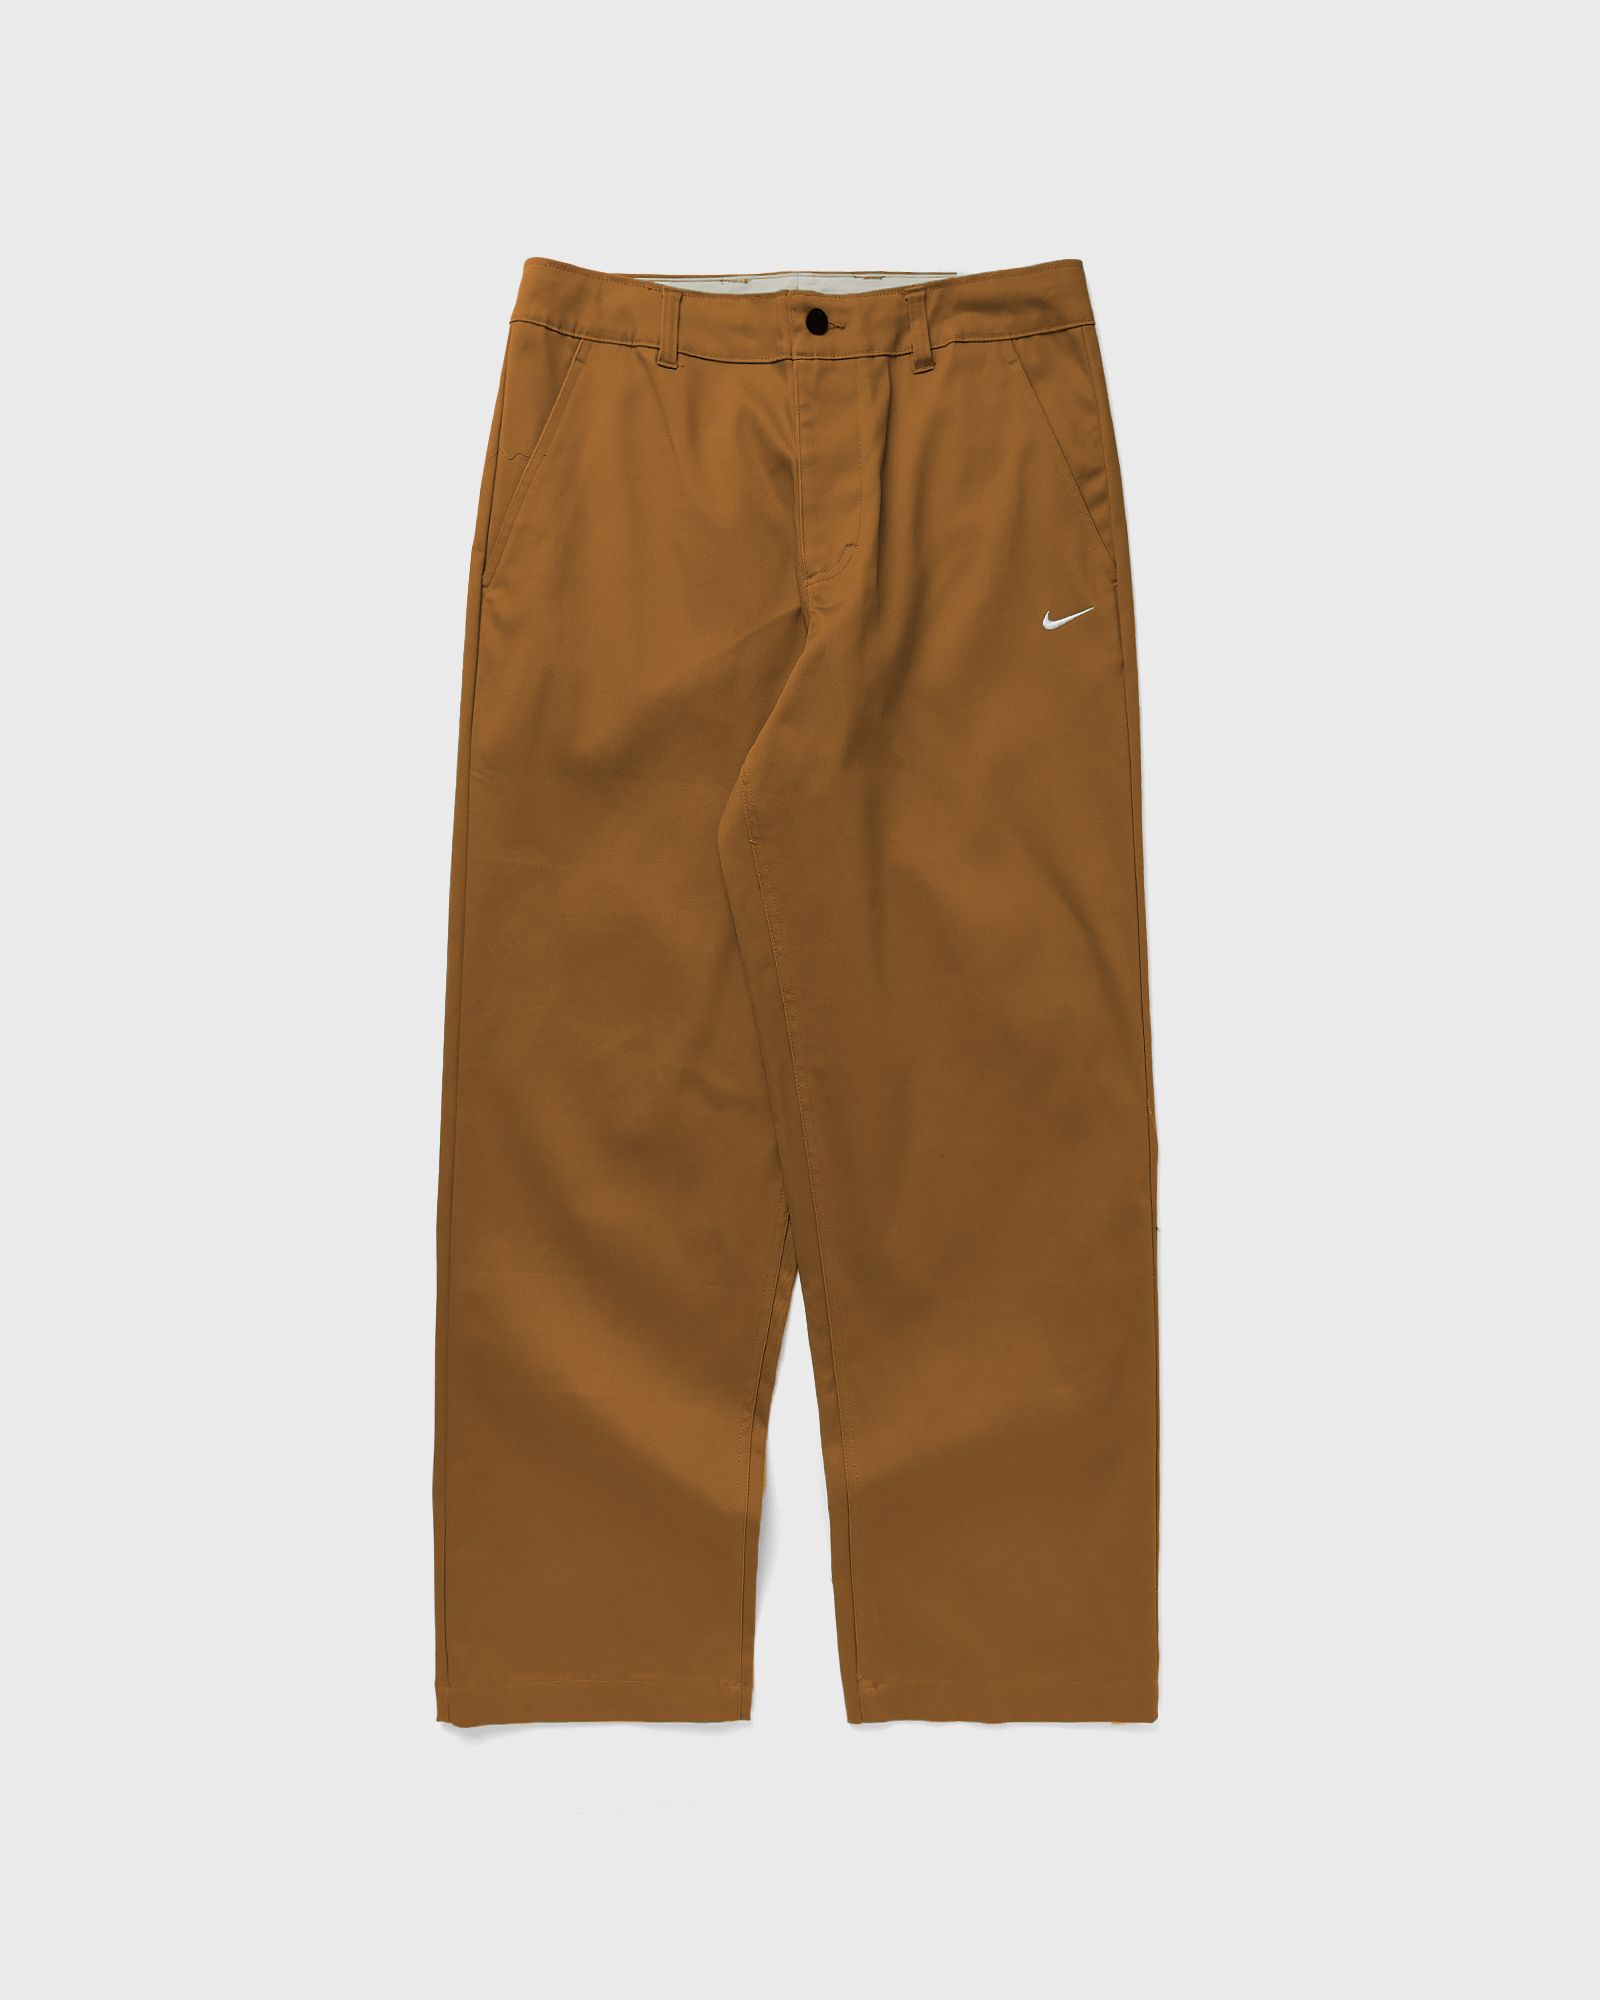 Nike - el chino pants men casual pants brown in größe:xxl